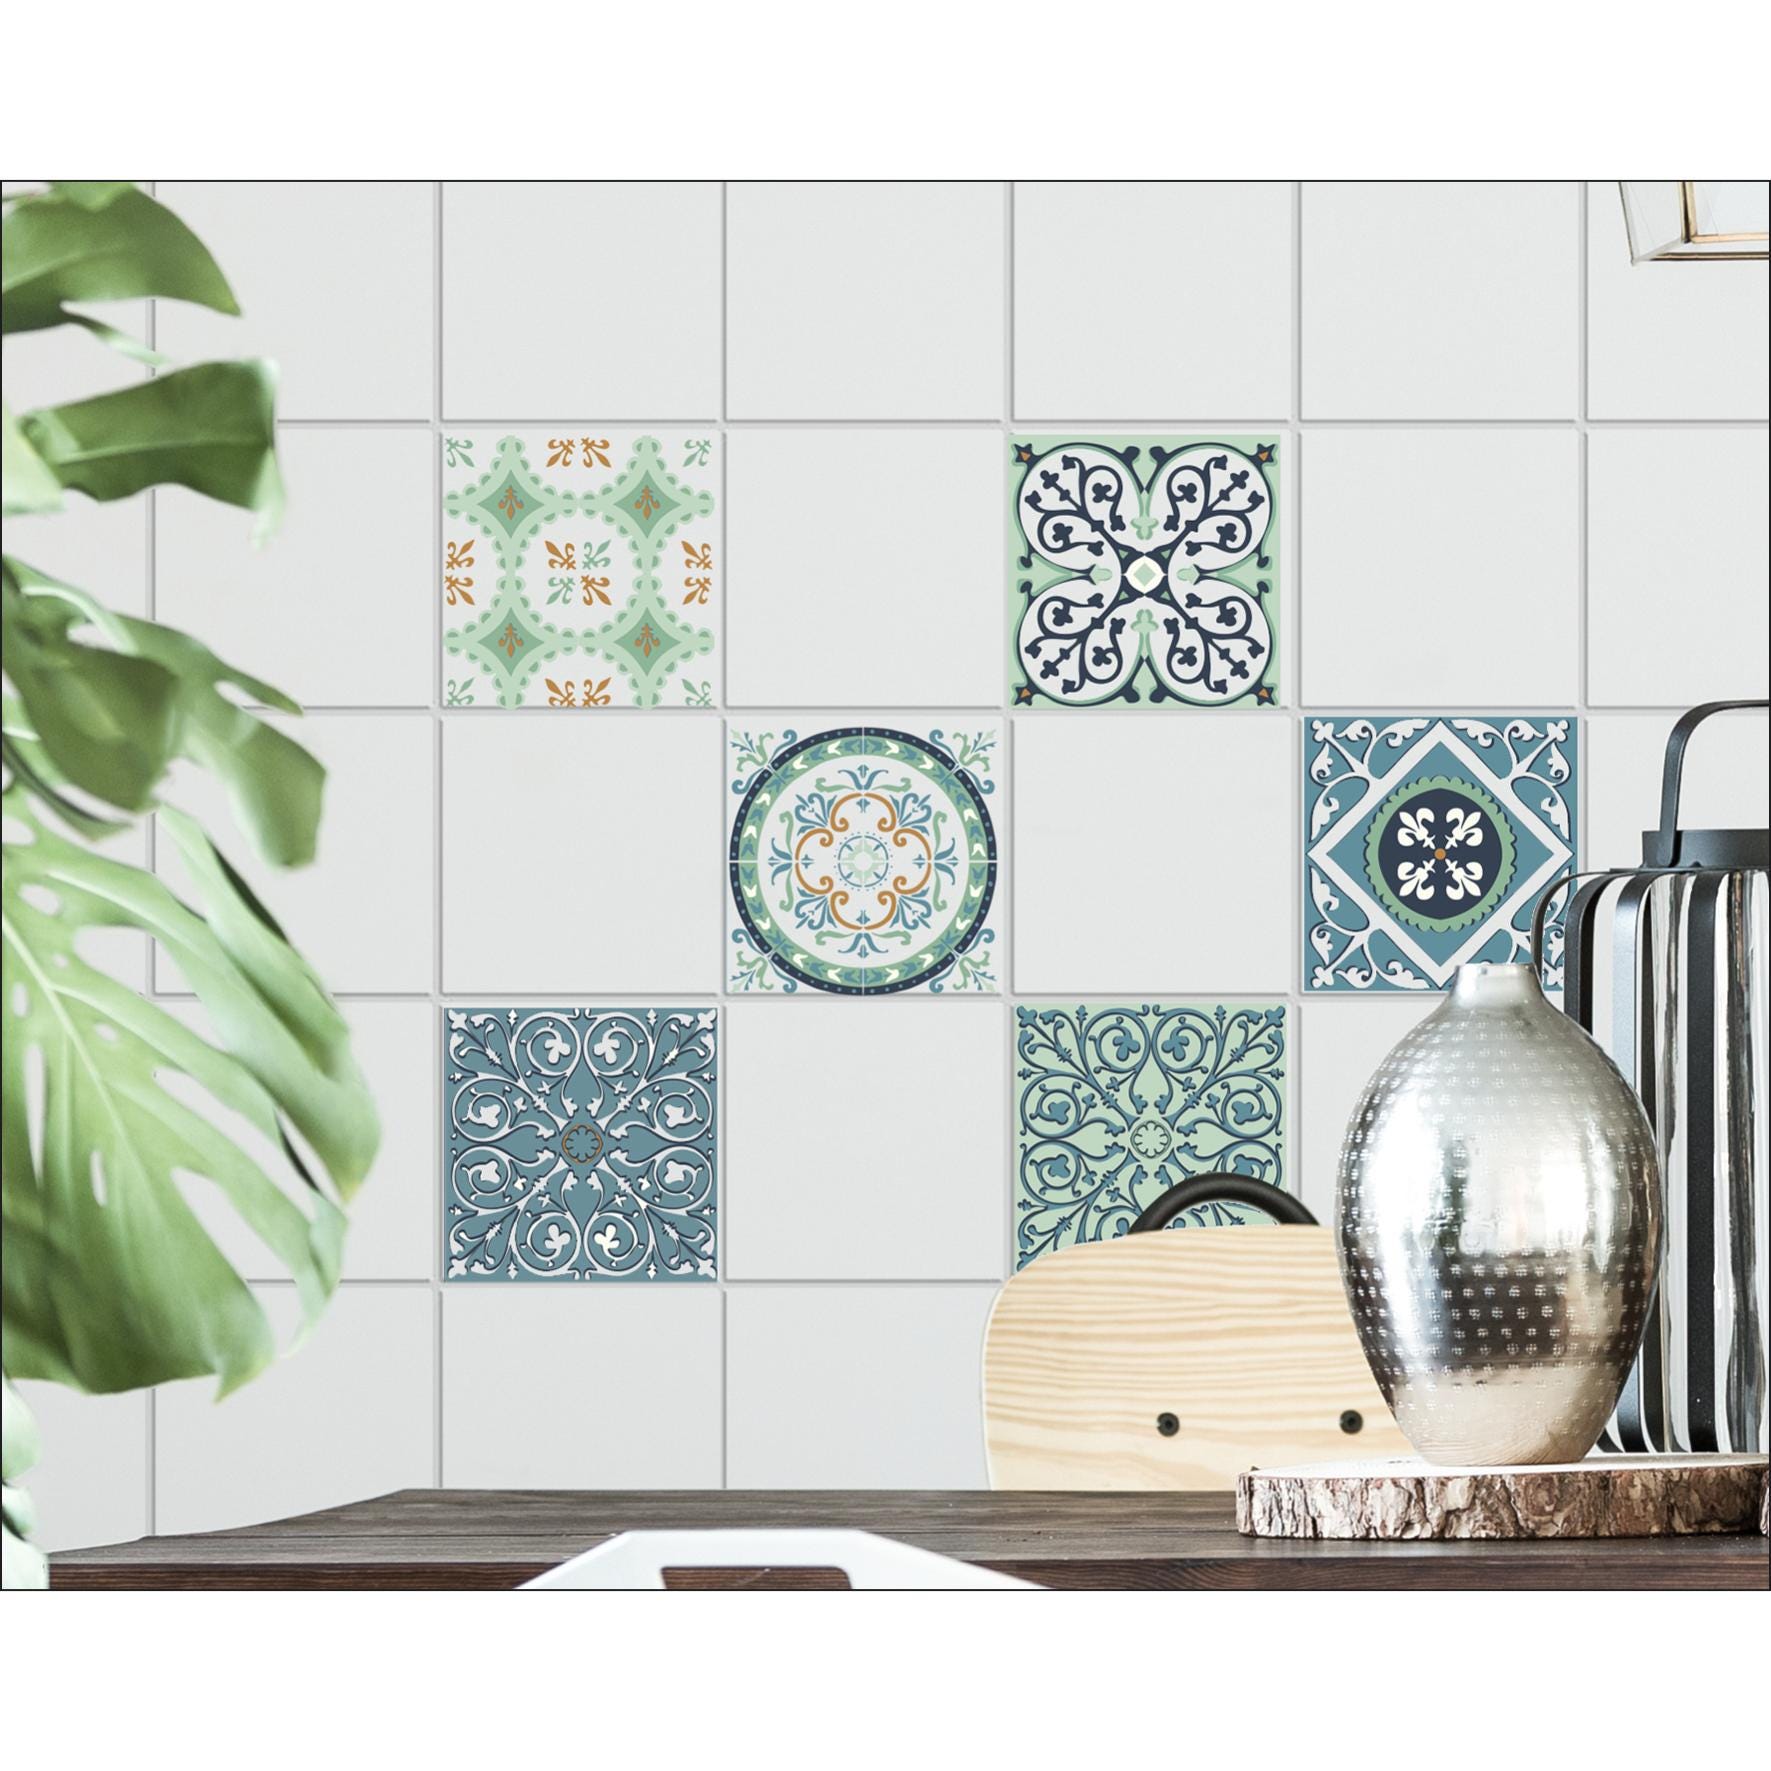 Sticker Design vi presenta Wall stickers piastrella bagno e cucina